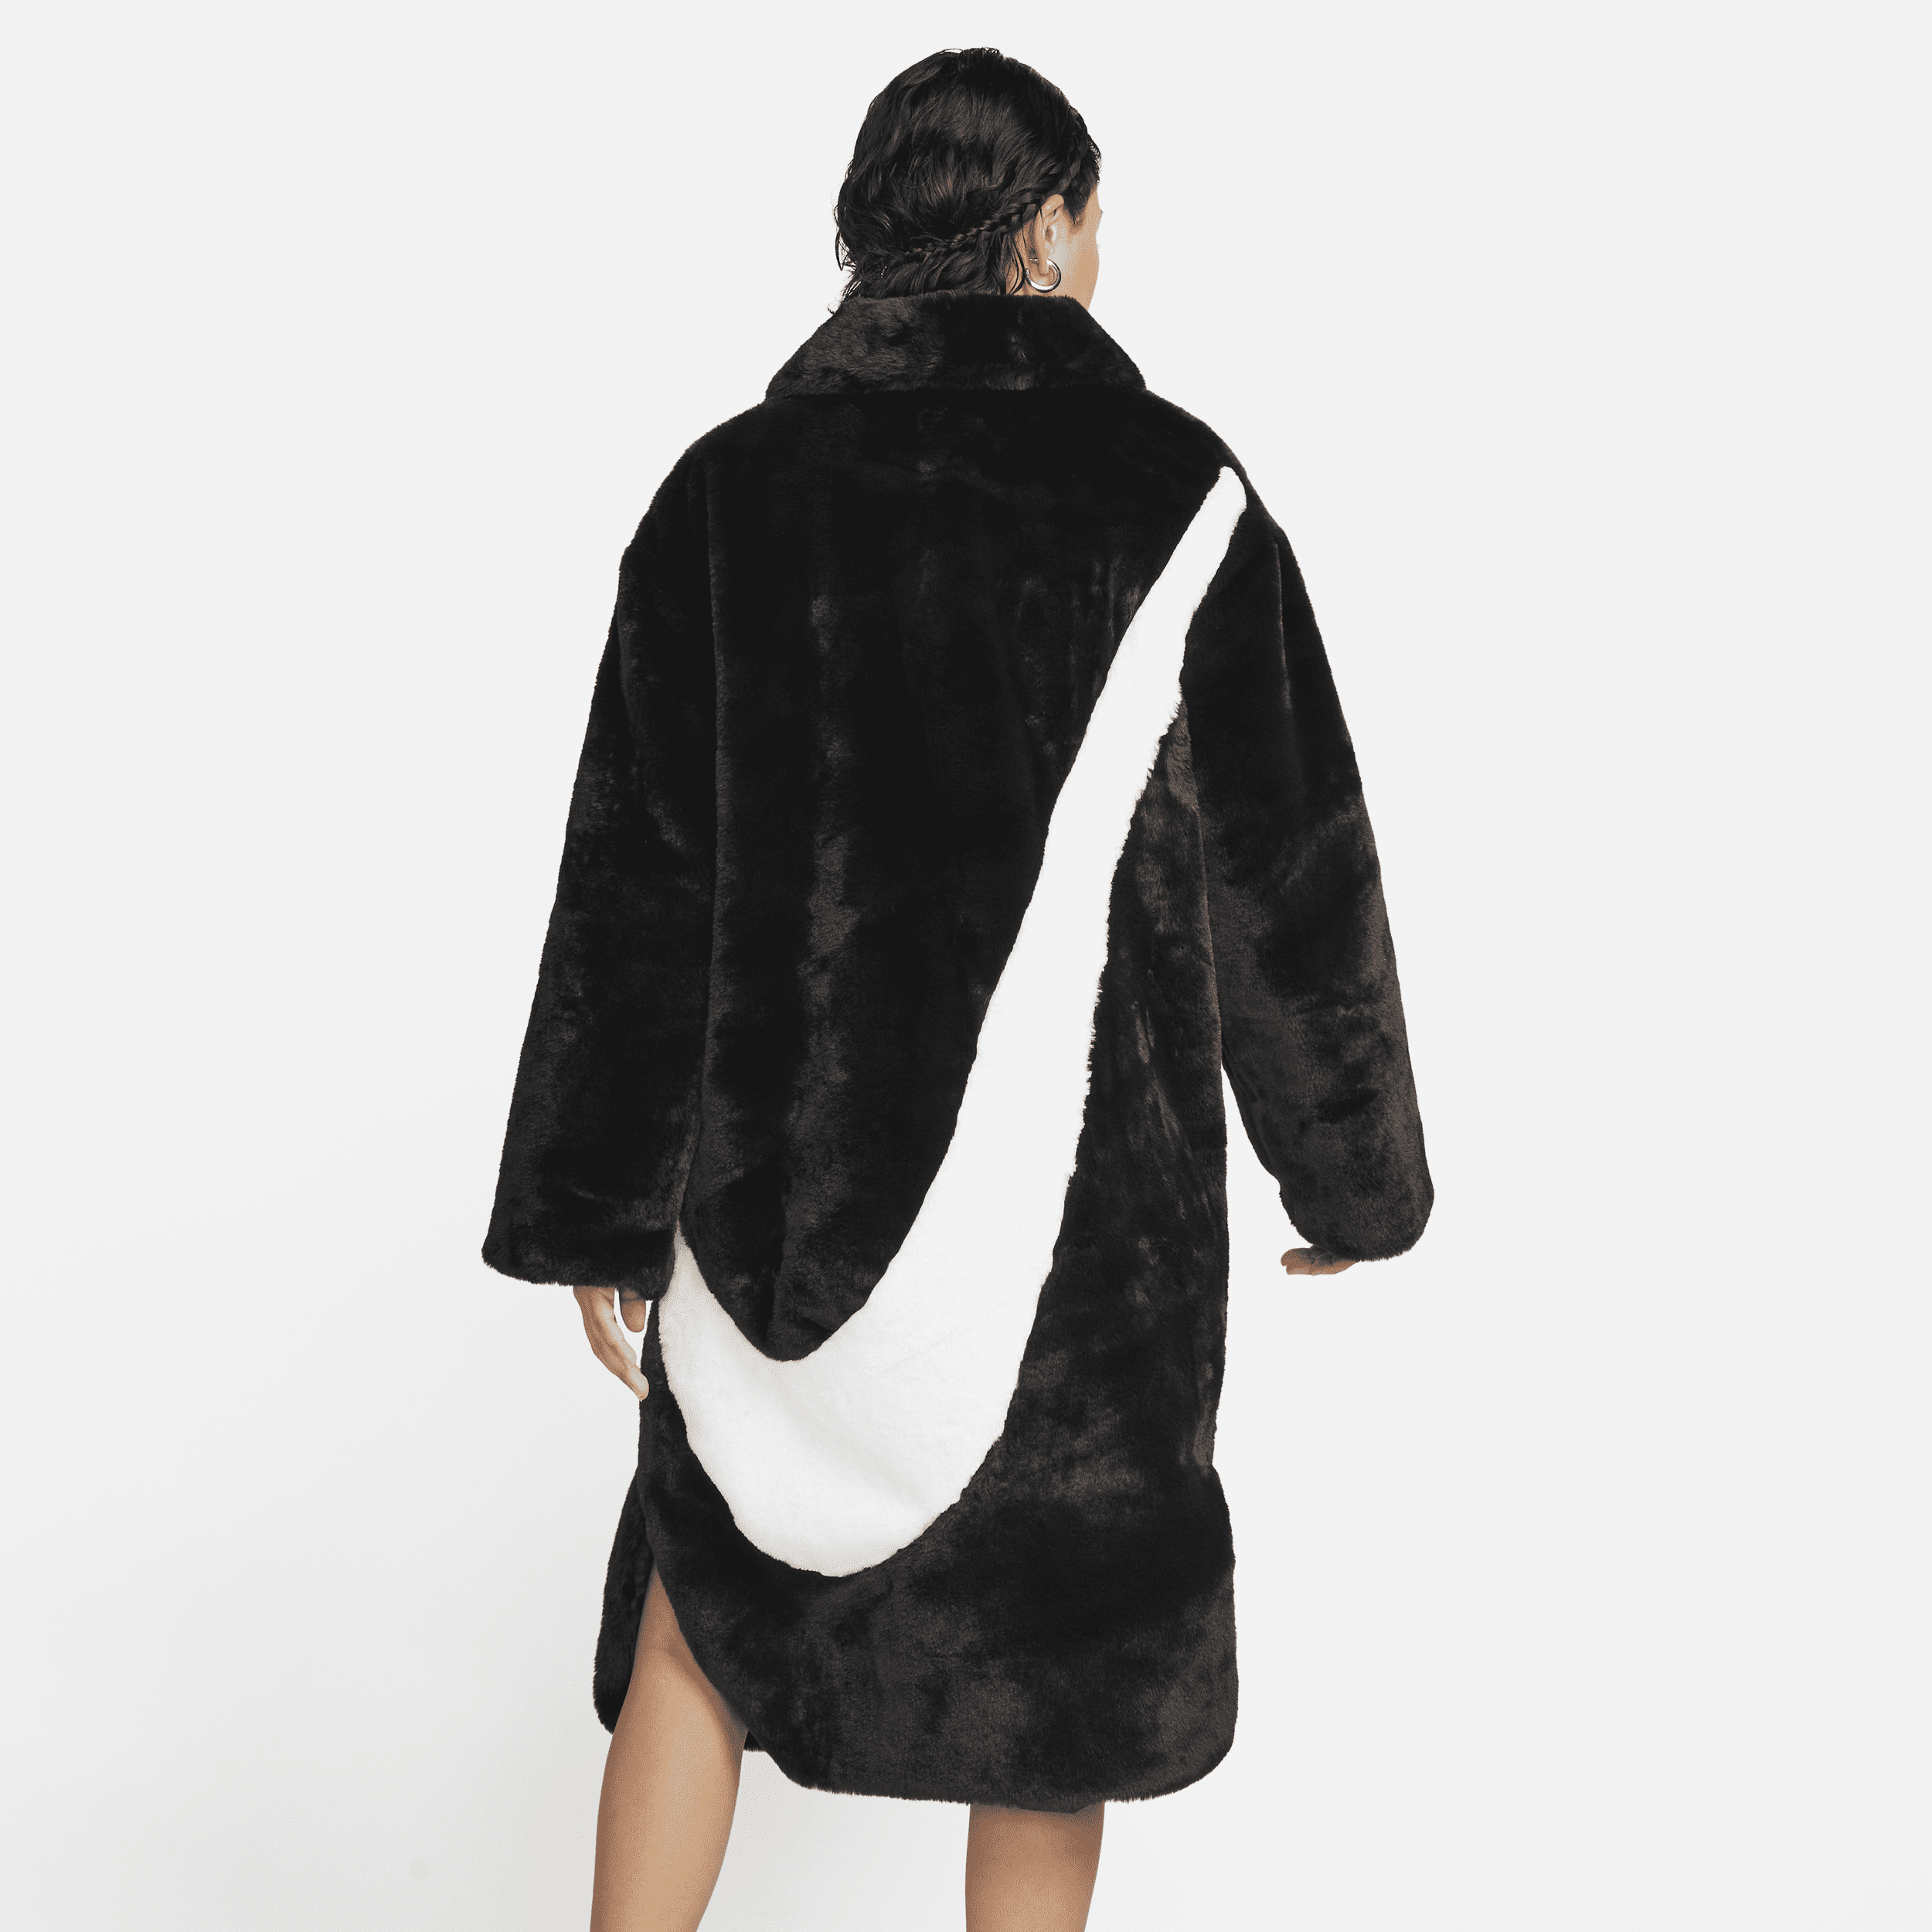 Lang Nike Sportswear-jakke i imiteret pels til kvinder - sort